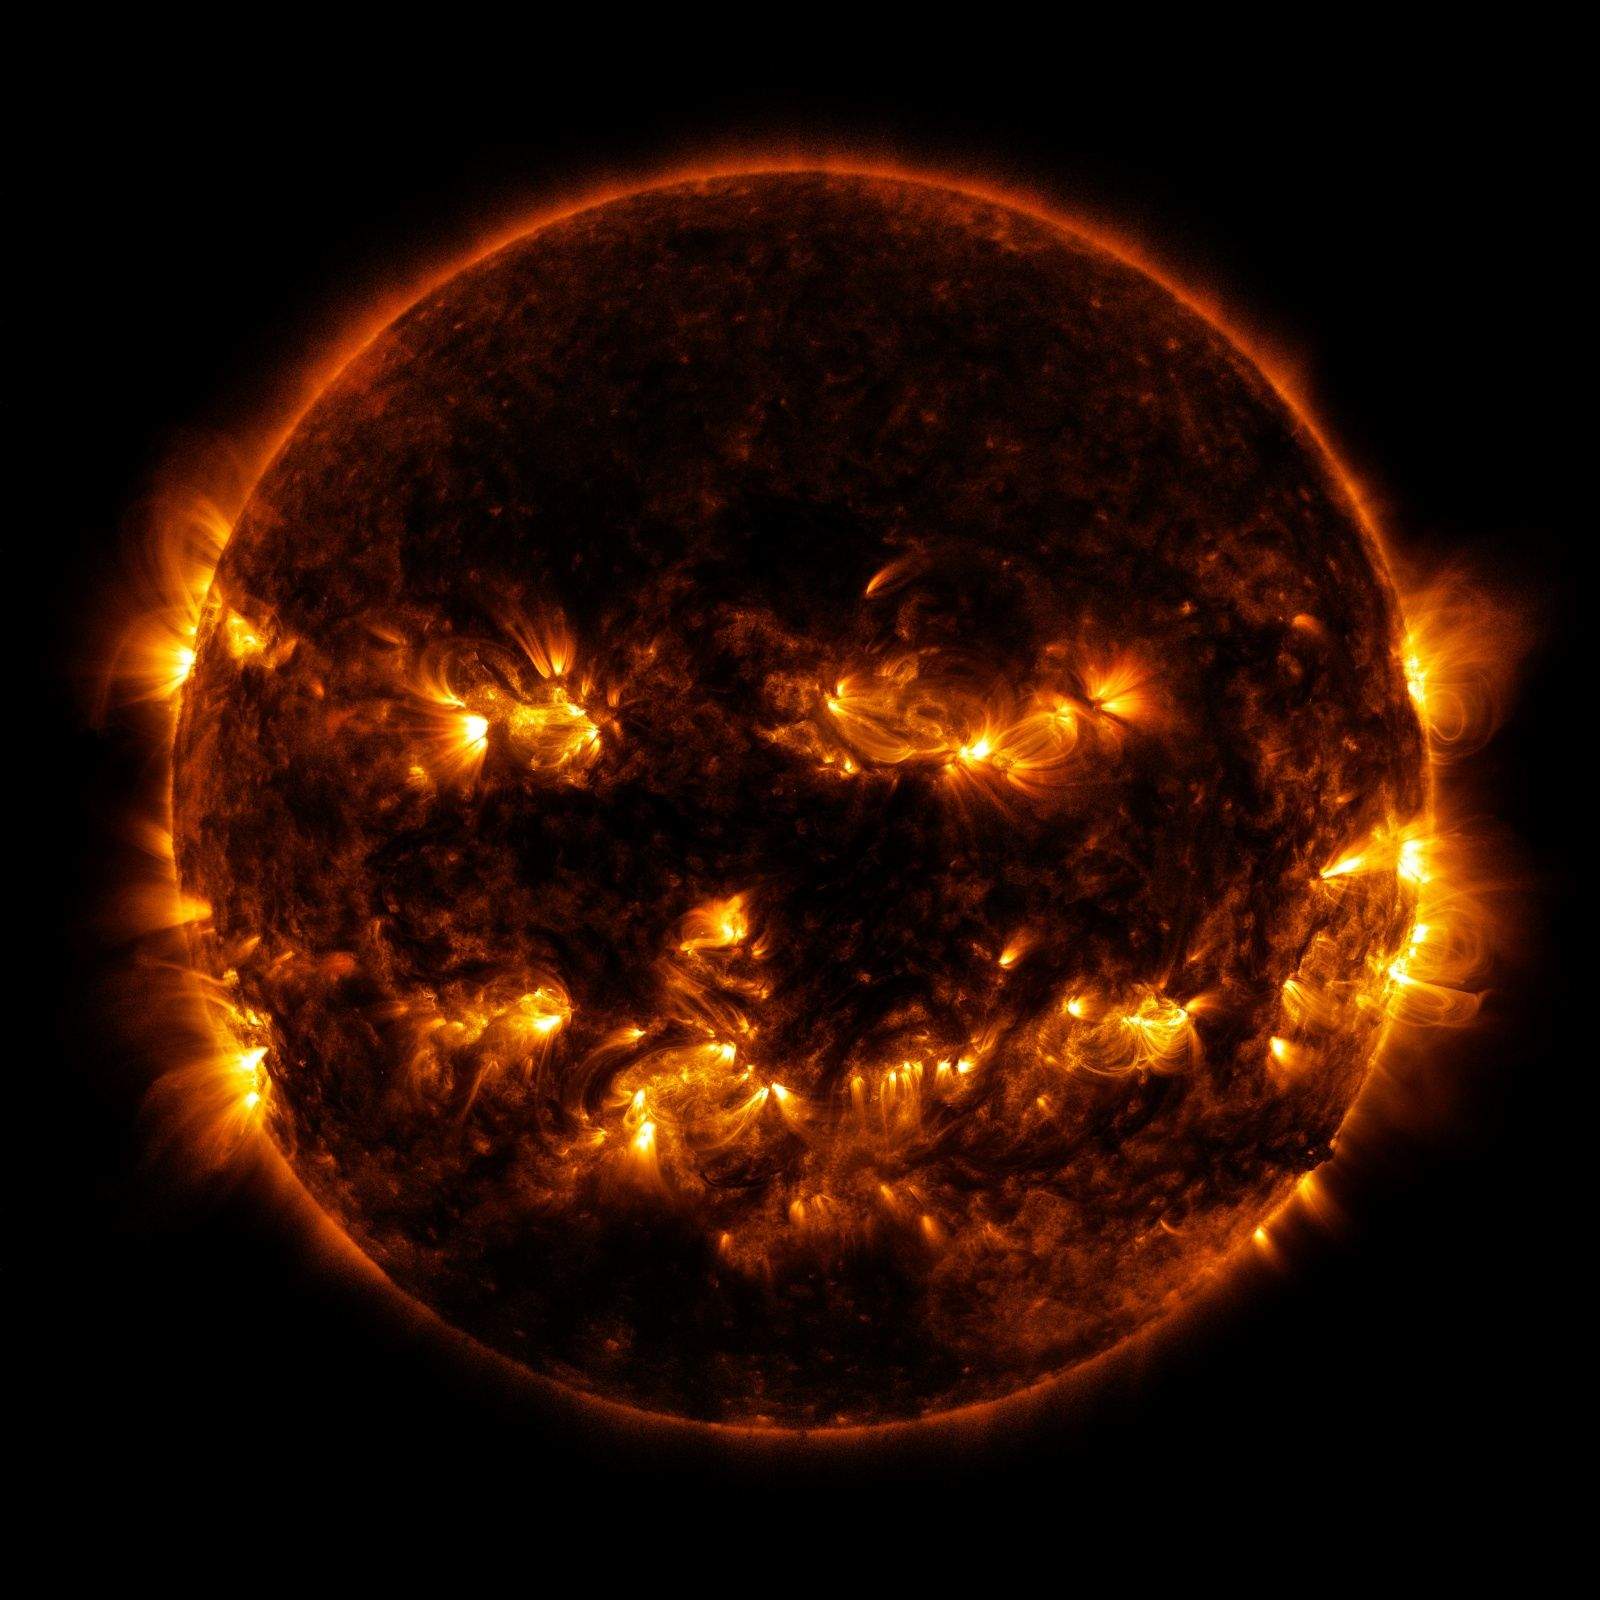 Black hole sun/Won't you come... Photo: NASA/SDO